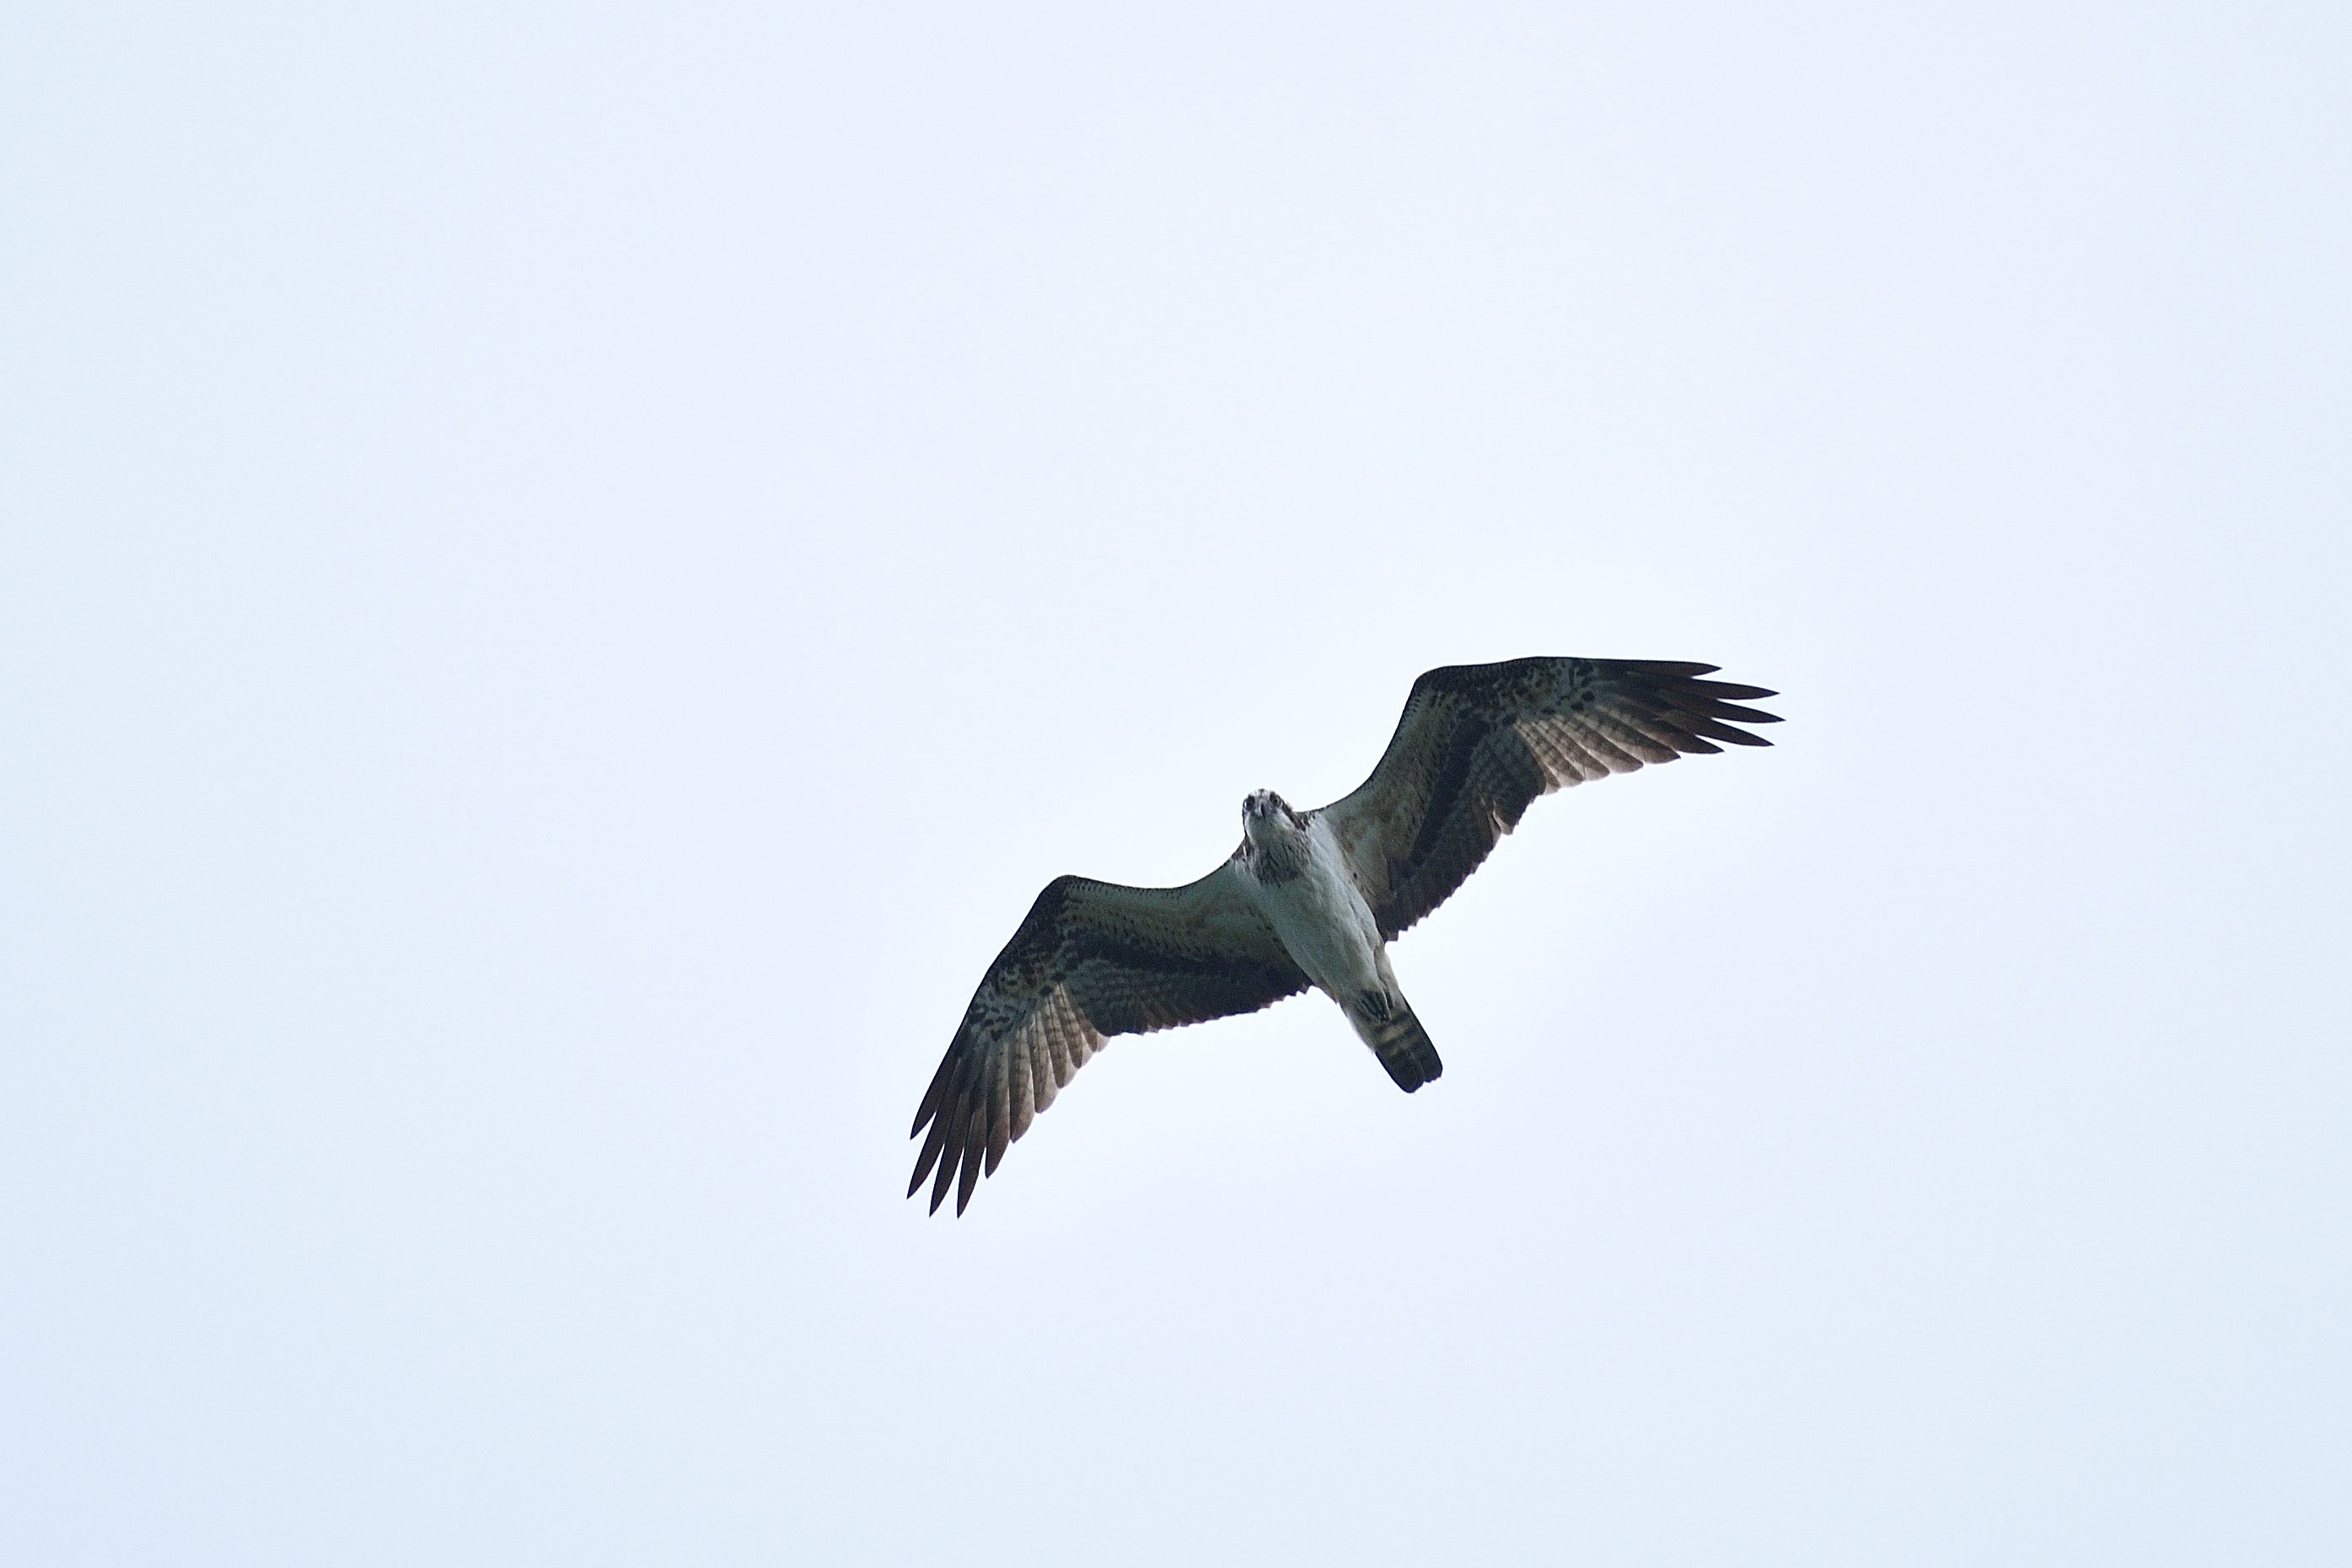 魚鷹(稀有保育類)可俯衝入水捕食魚類。